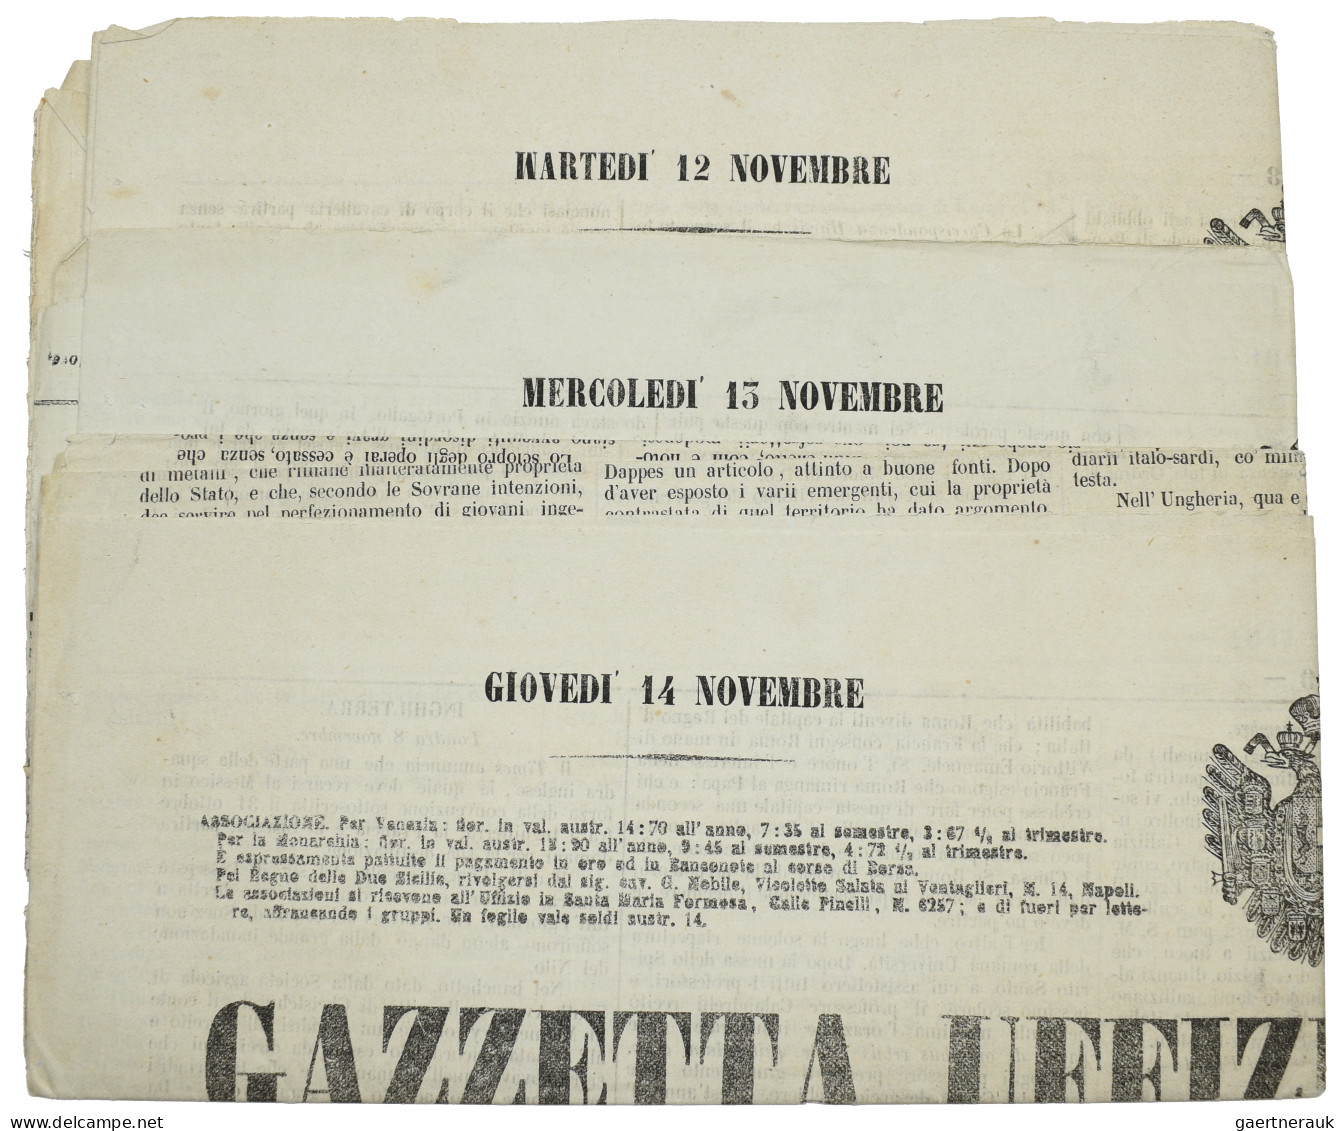 Österreich - Lombardei und Venetien - Zeitungsmarken: 1861, (1,05 soldi) grau, i